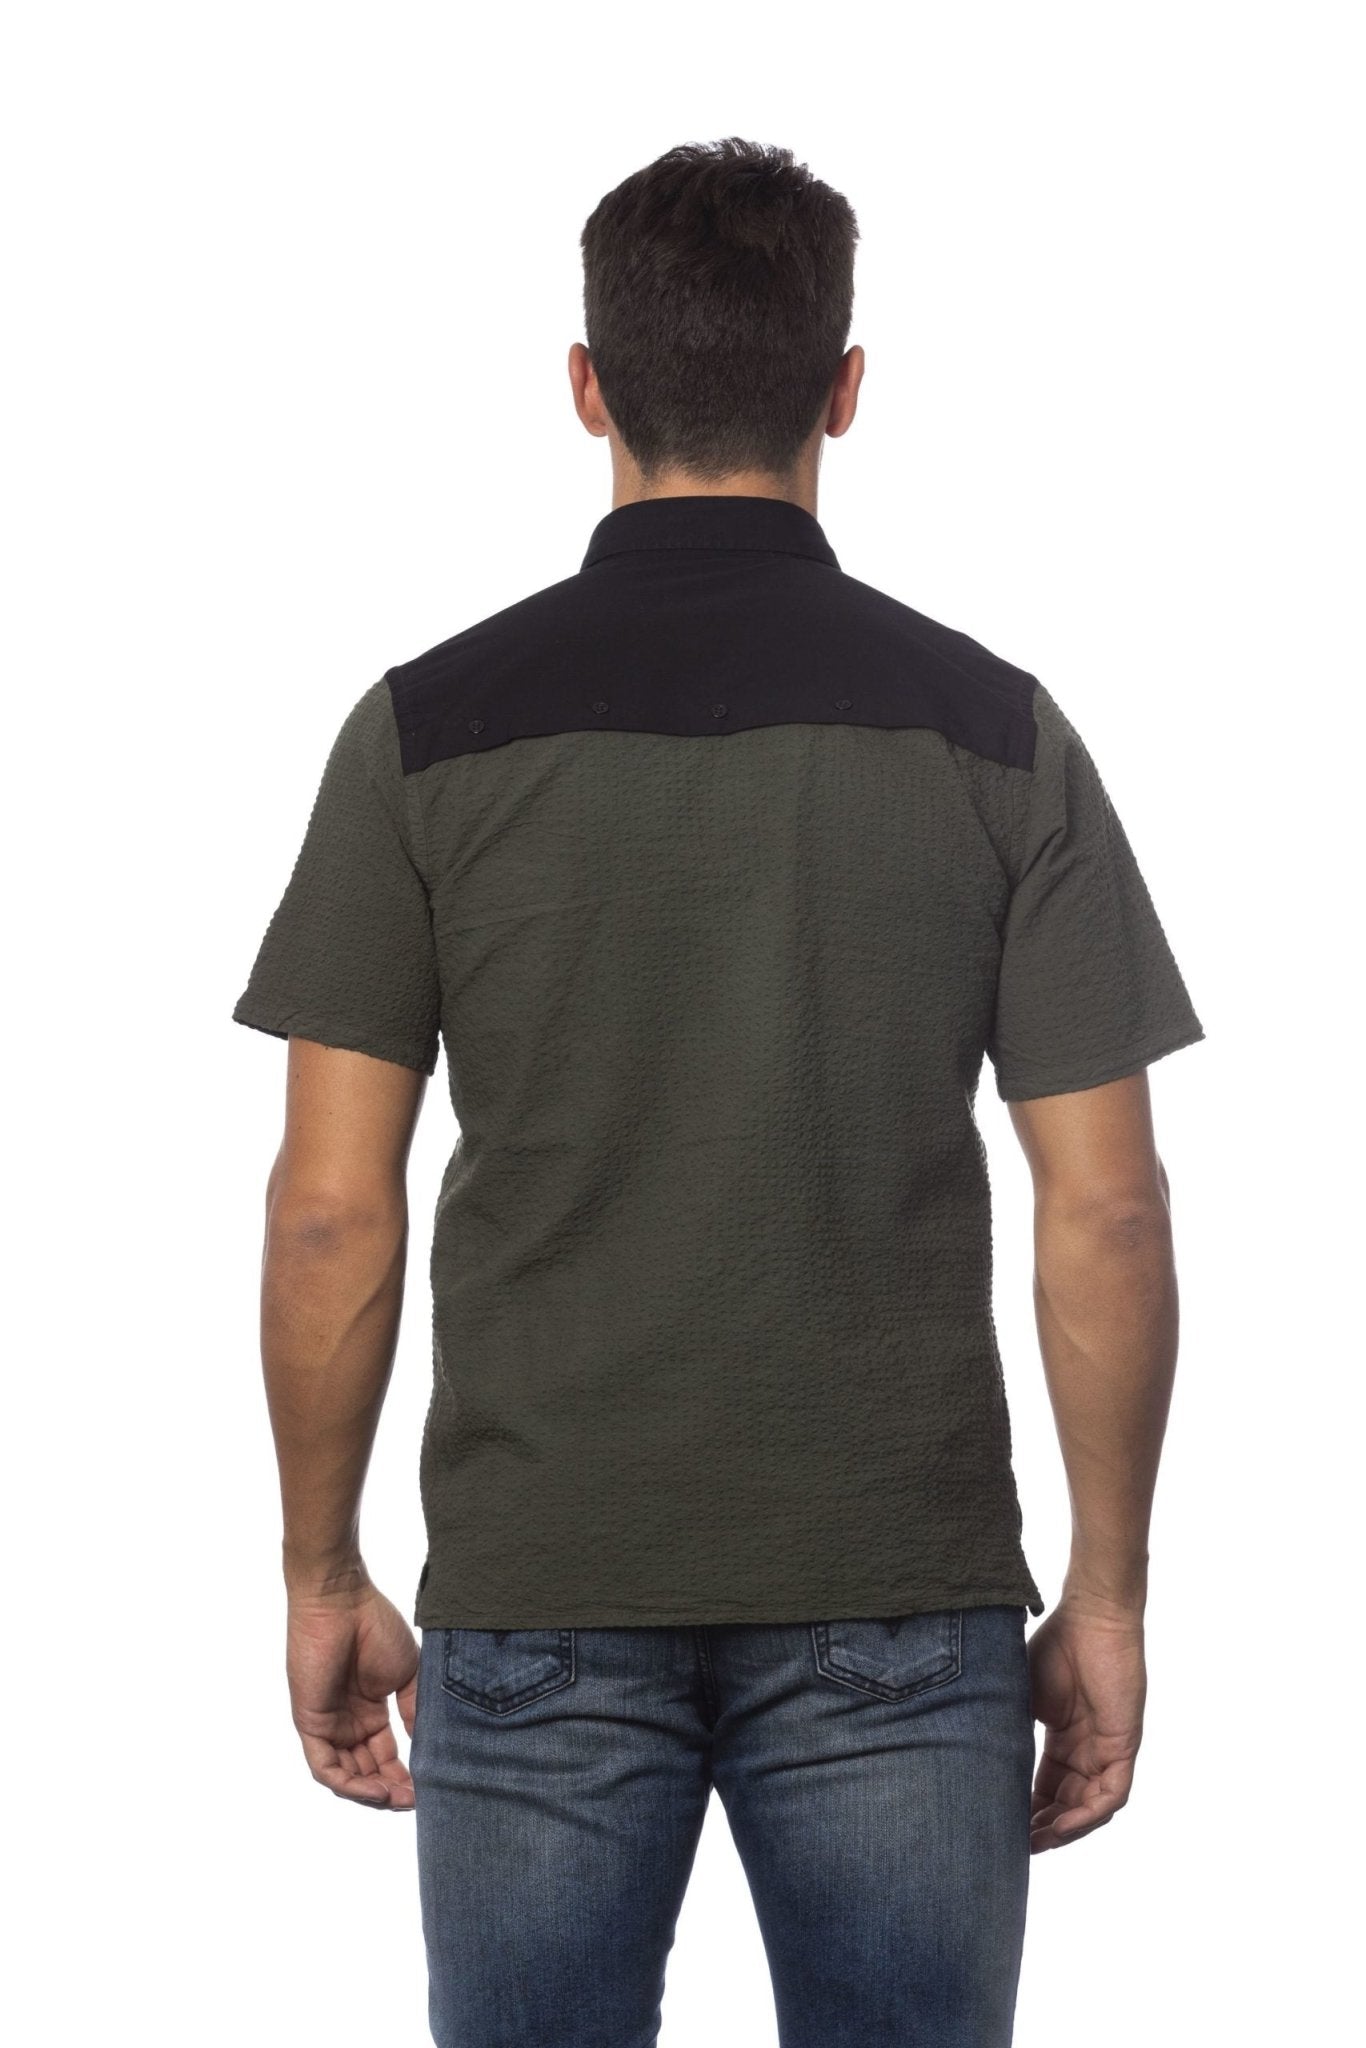 Verri Army Cotton Shirt - Fizigo